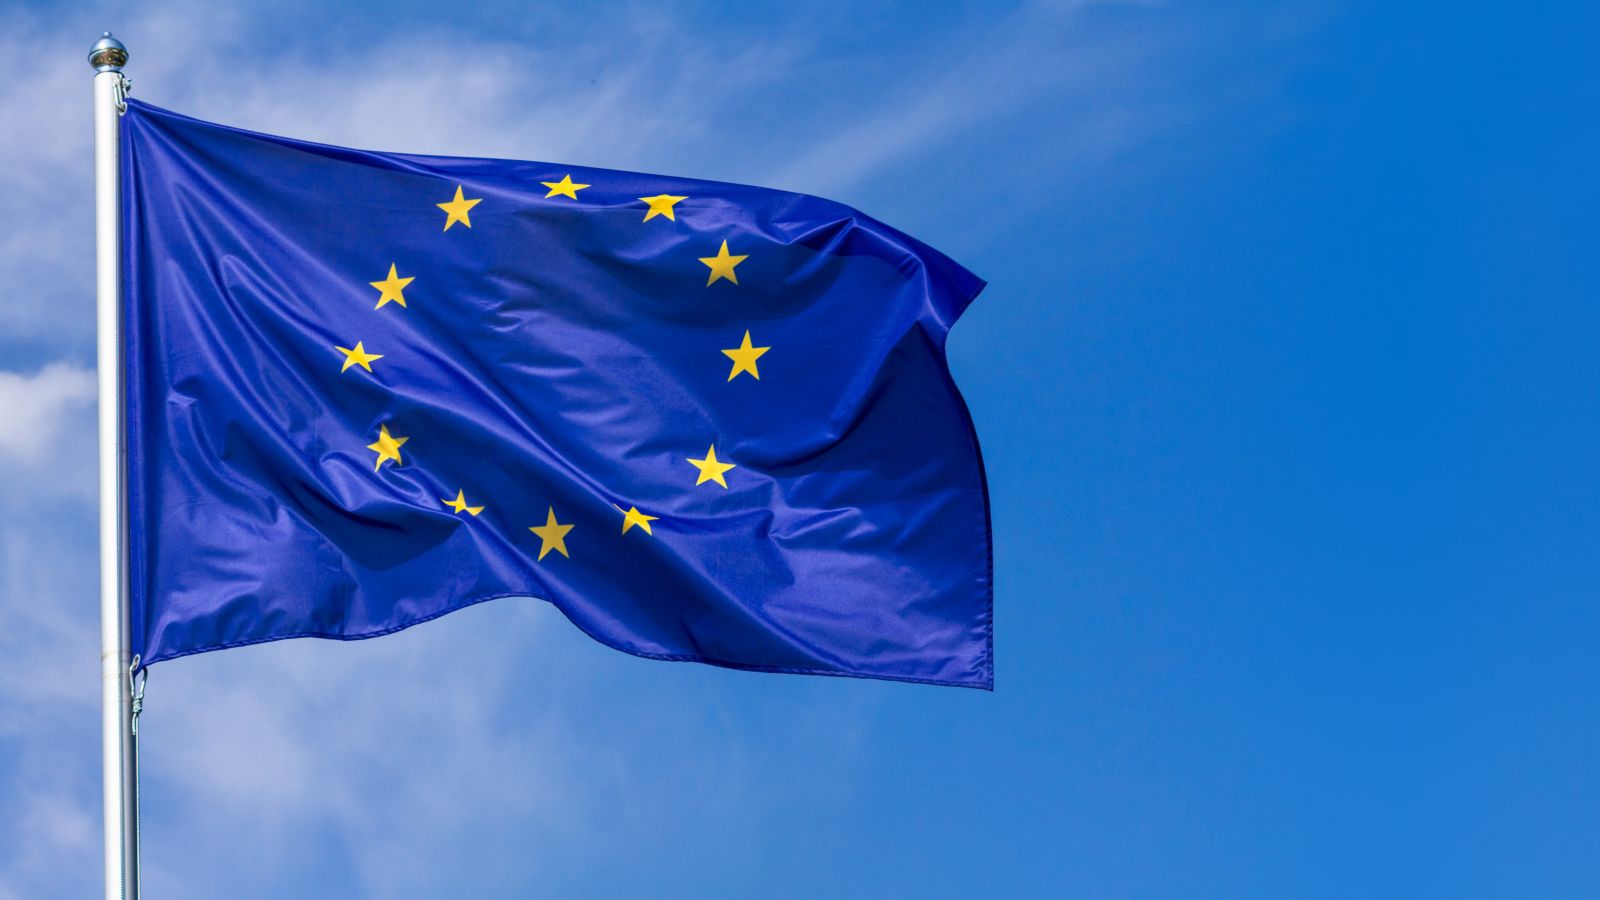 Wehende EU-Fahne vor blauem Himmel mit Schleierwolken